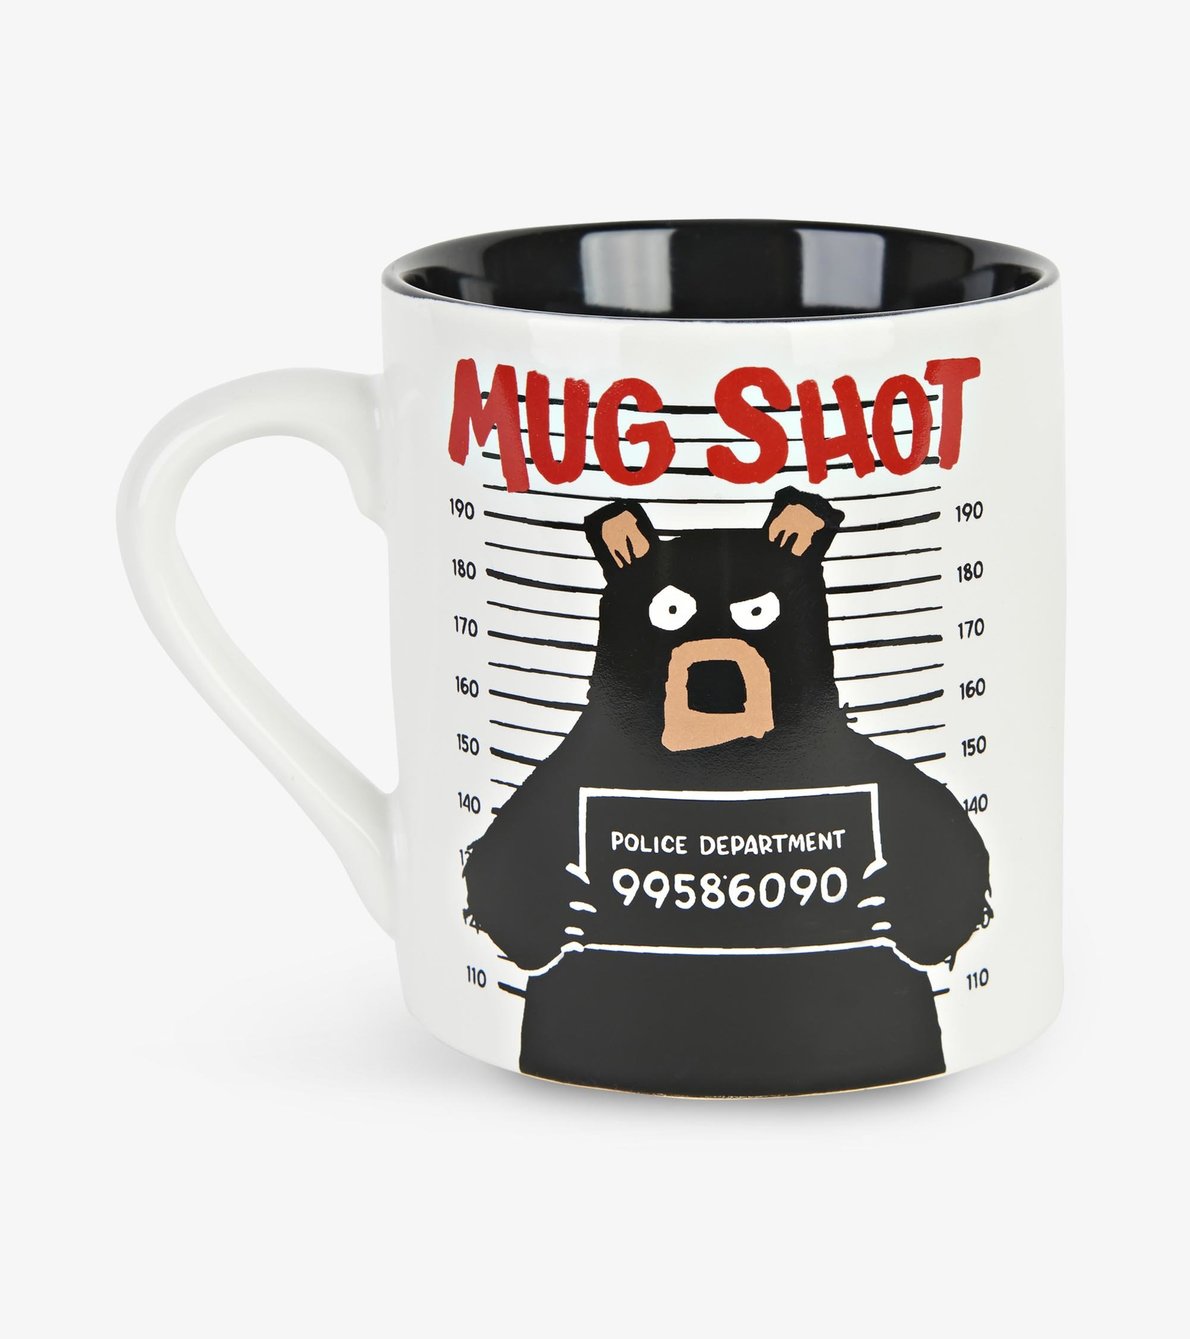 View larger image of Mug Shot Ceramic Mug